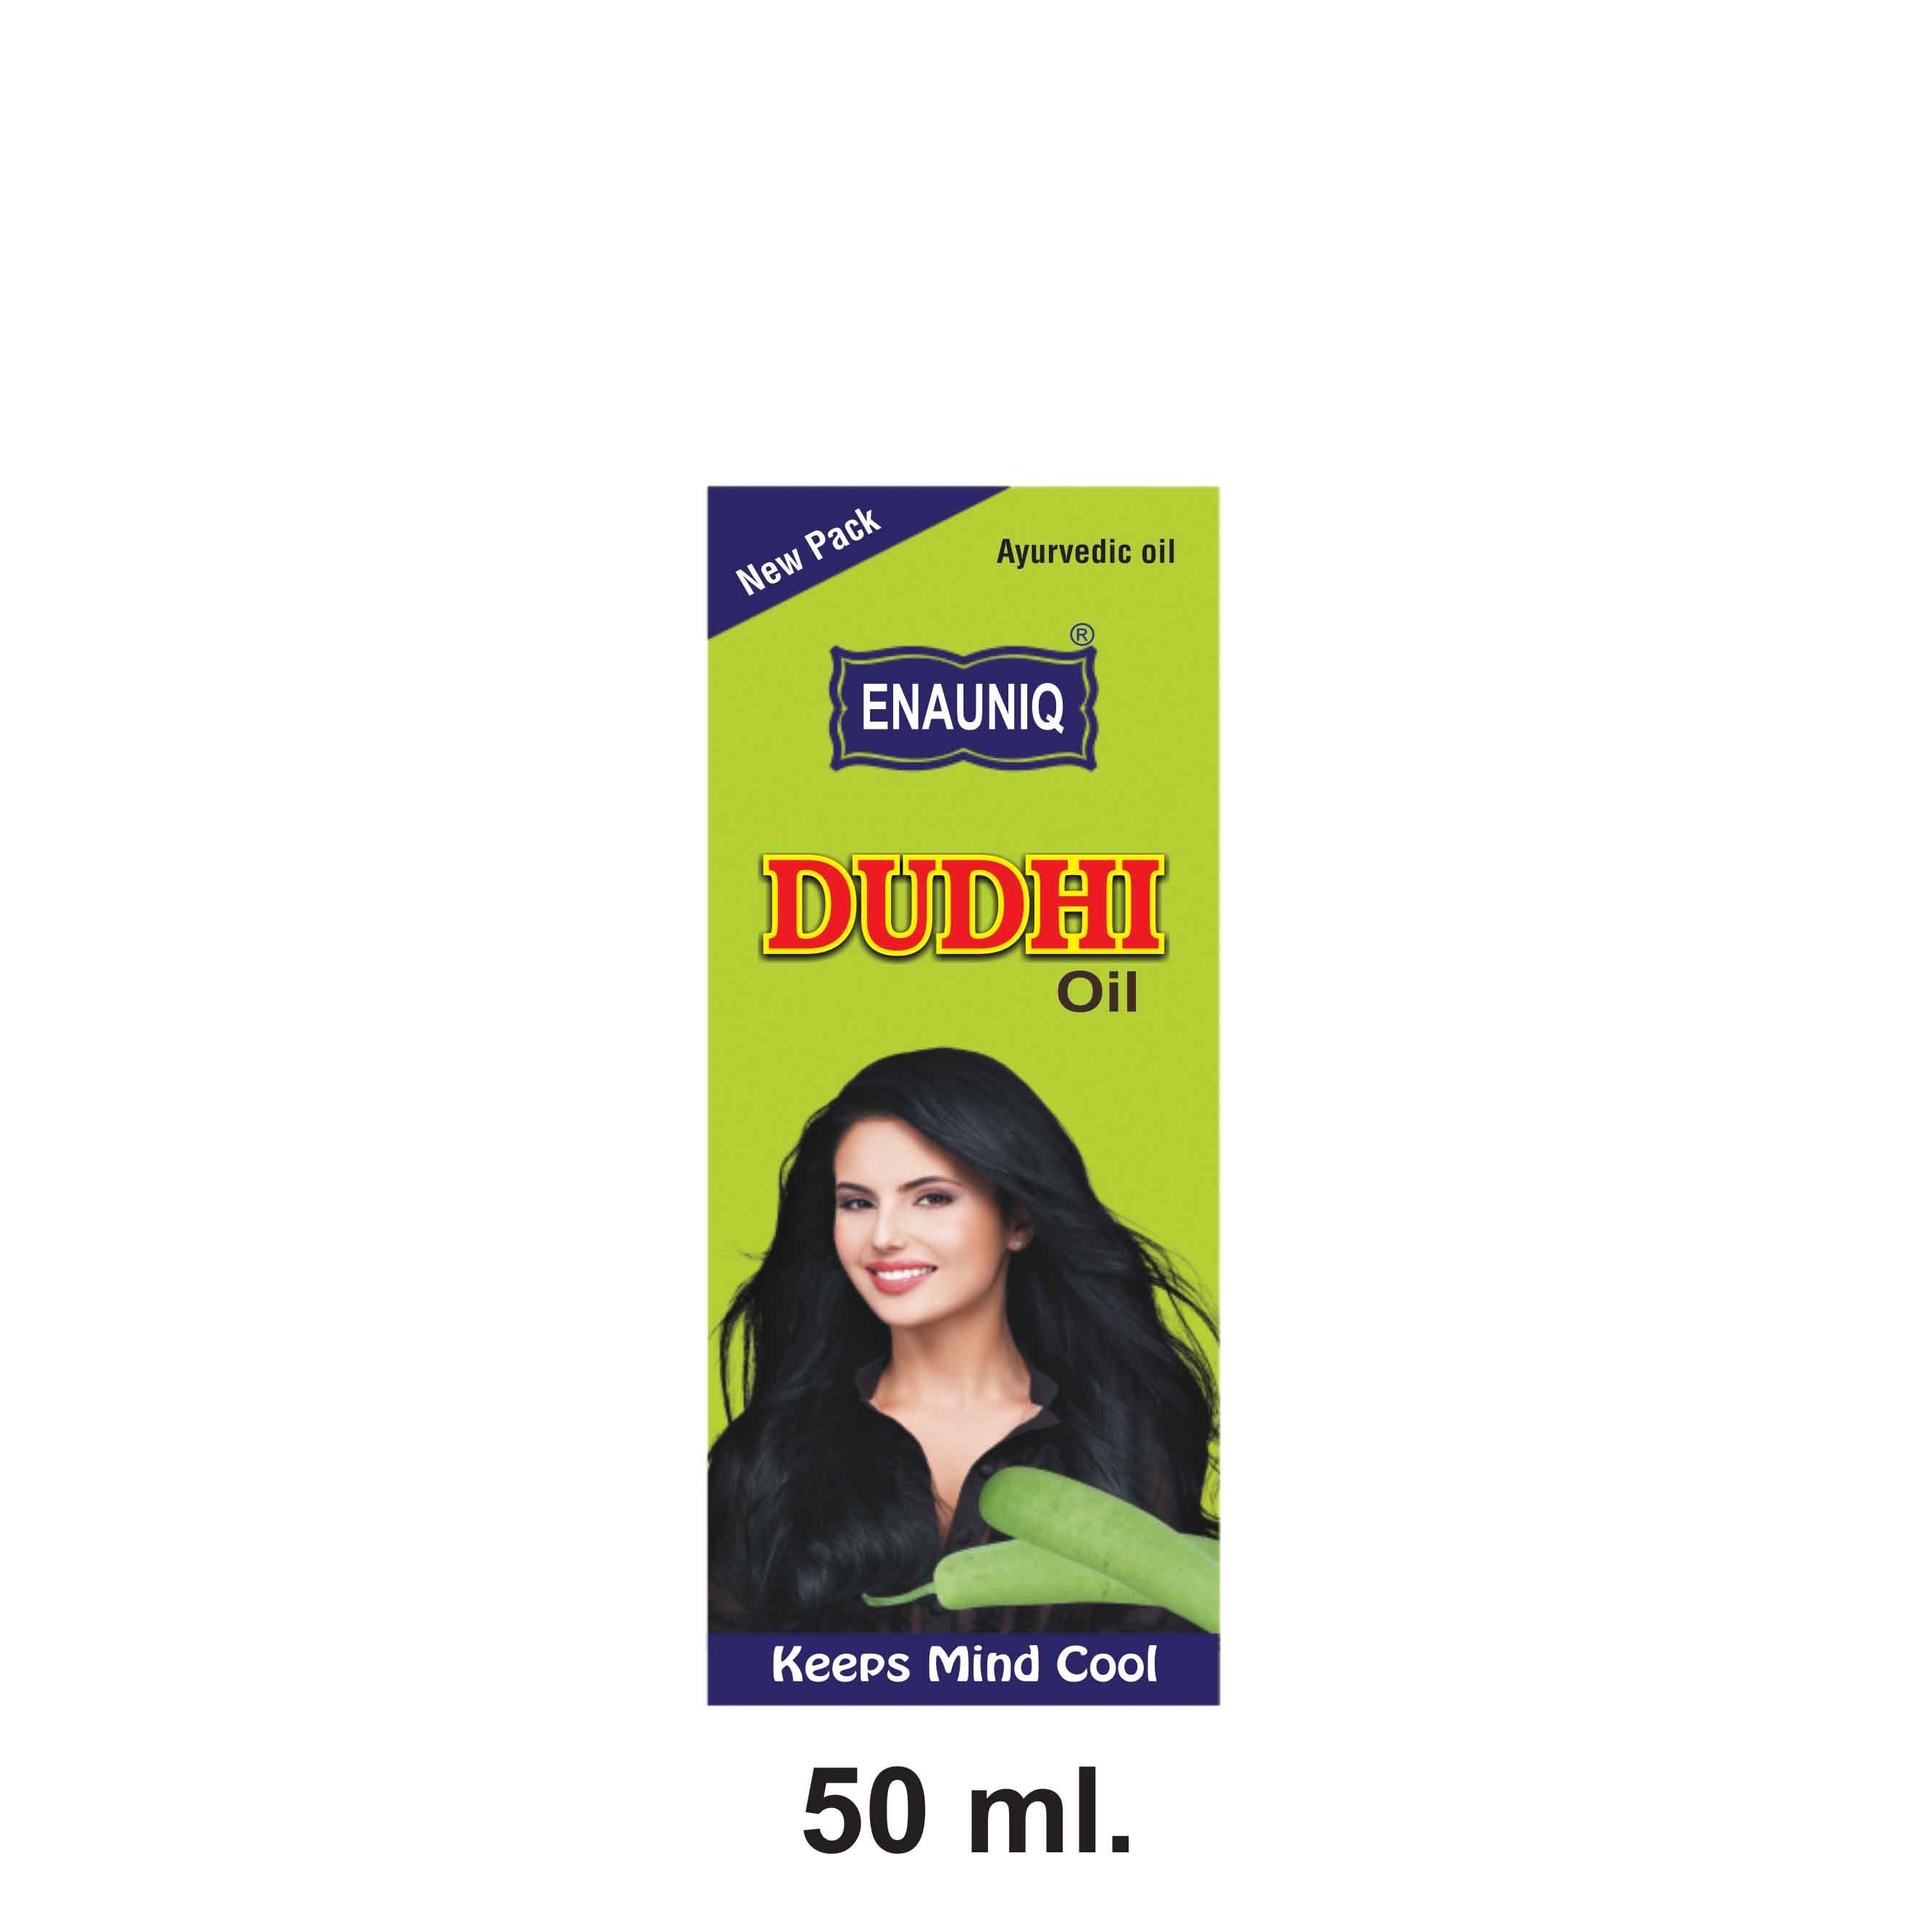 Pure Dudhi Hair Oil